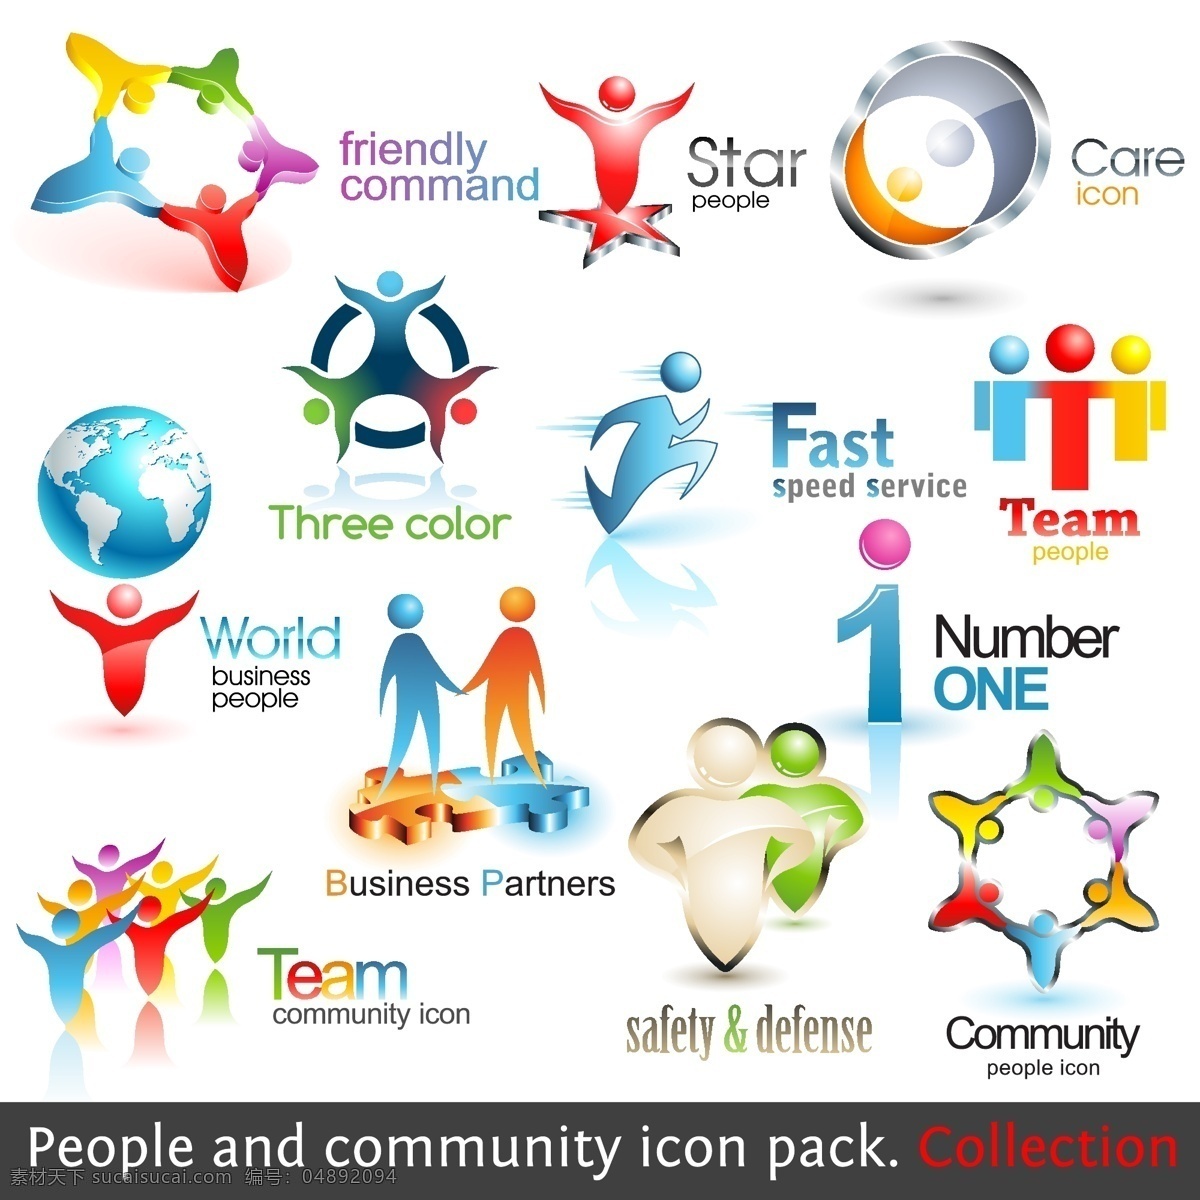 人物 logo logo设计 商品标识 商标 公司标志 创意logo 行业标志 标志图标 矢量素材 白色